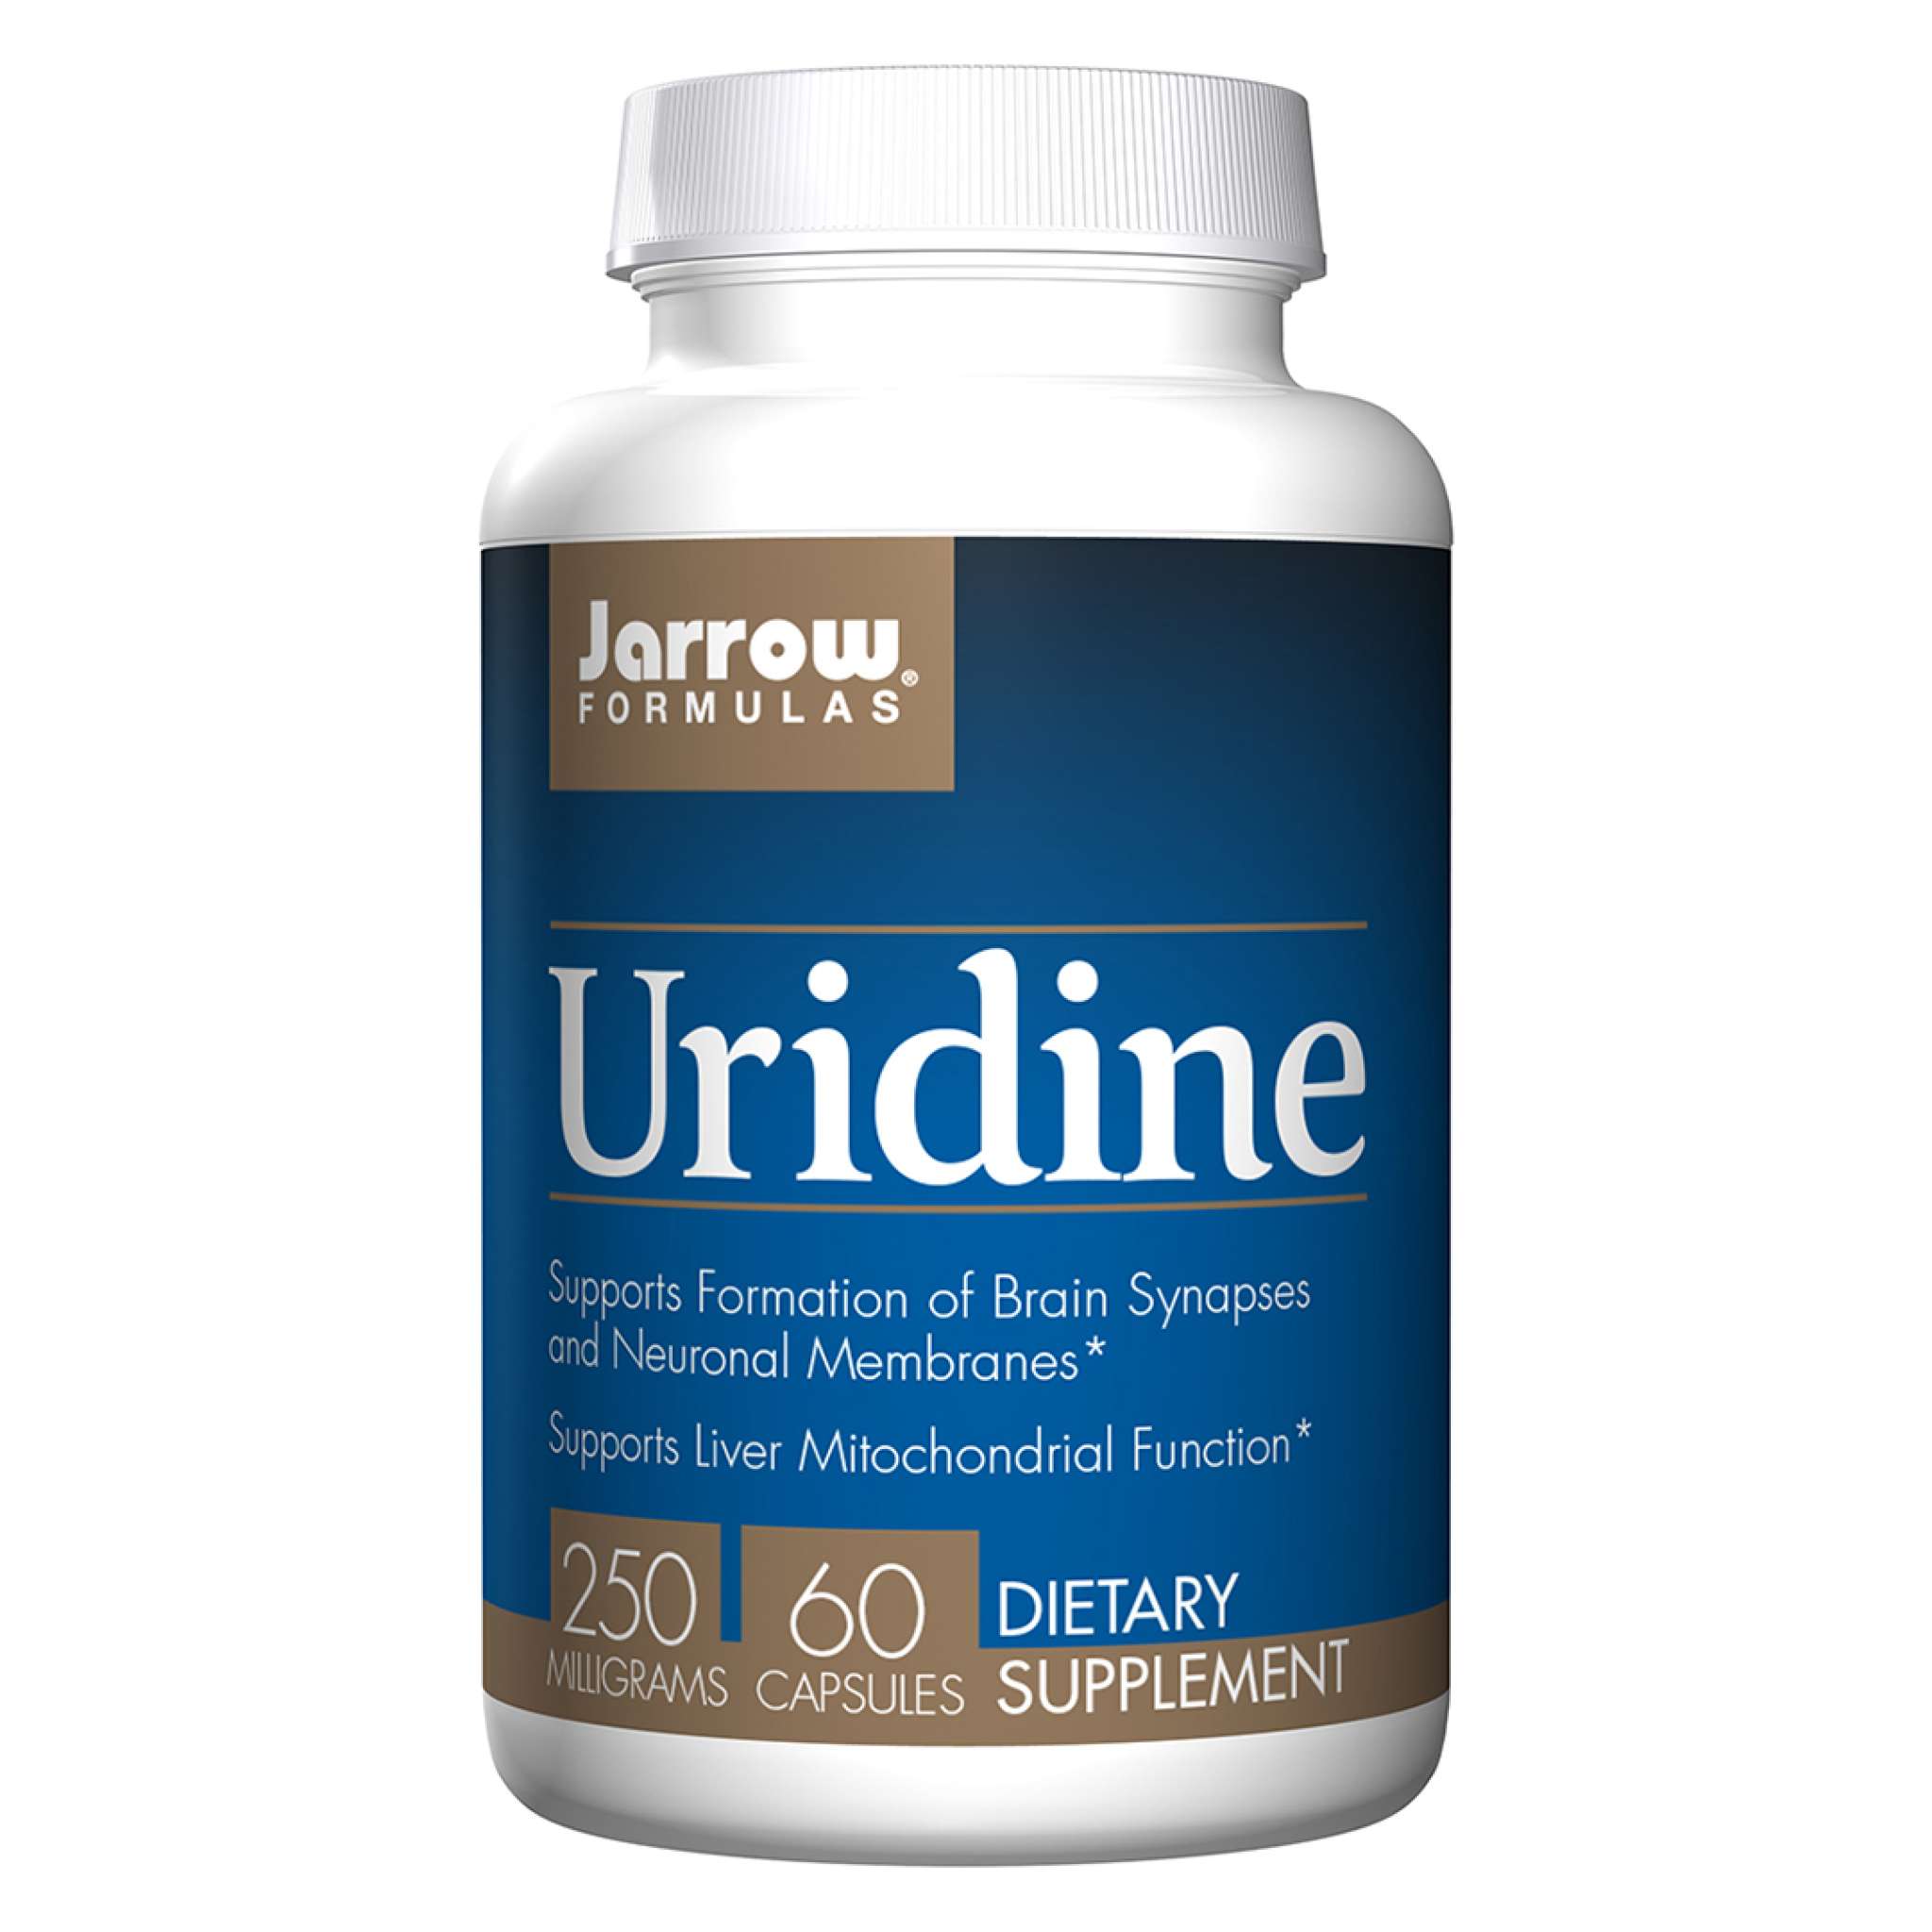 Jarrow Formulas - Uridine 250 mg